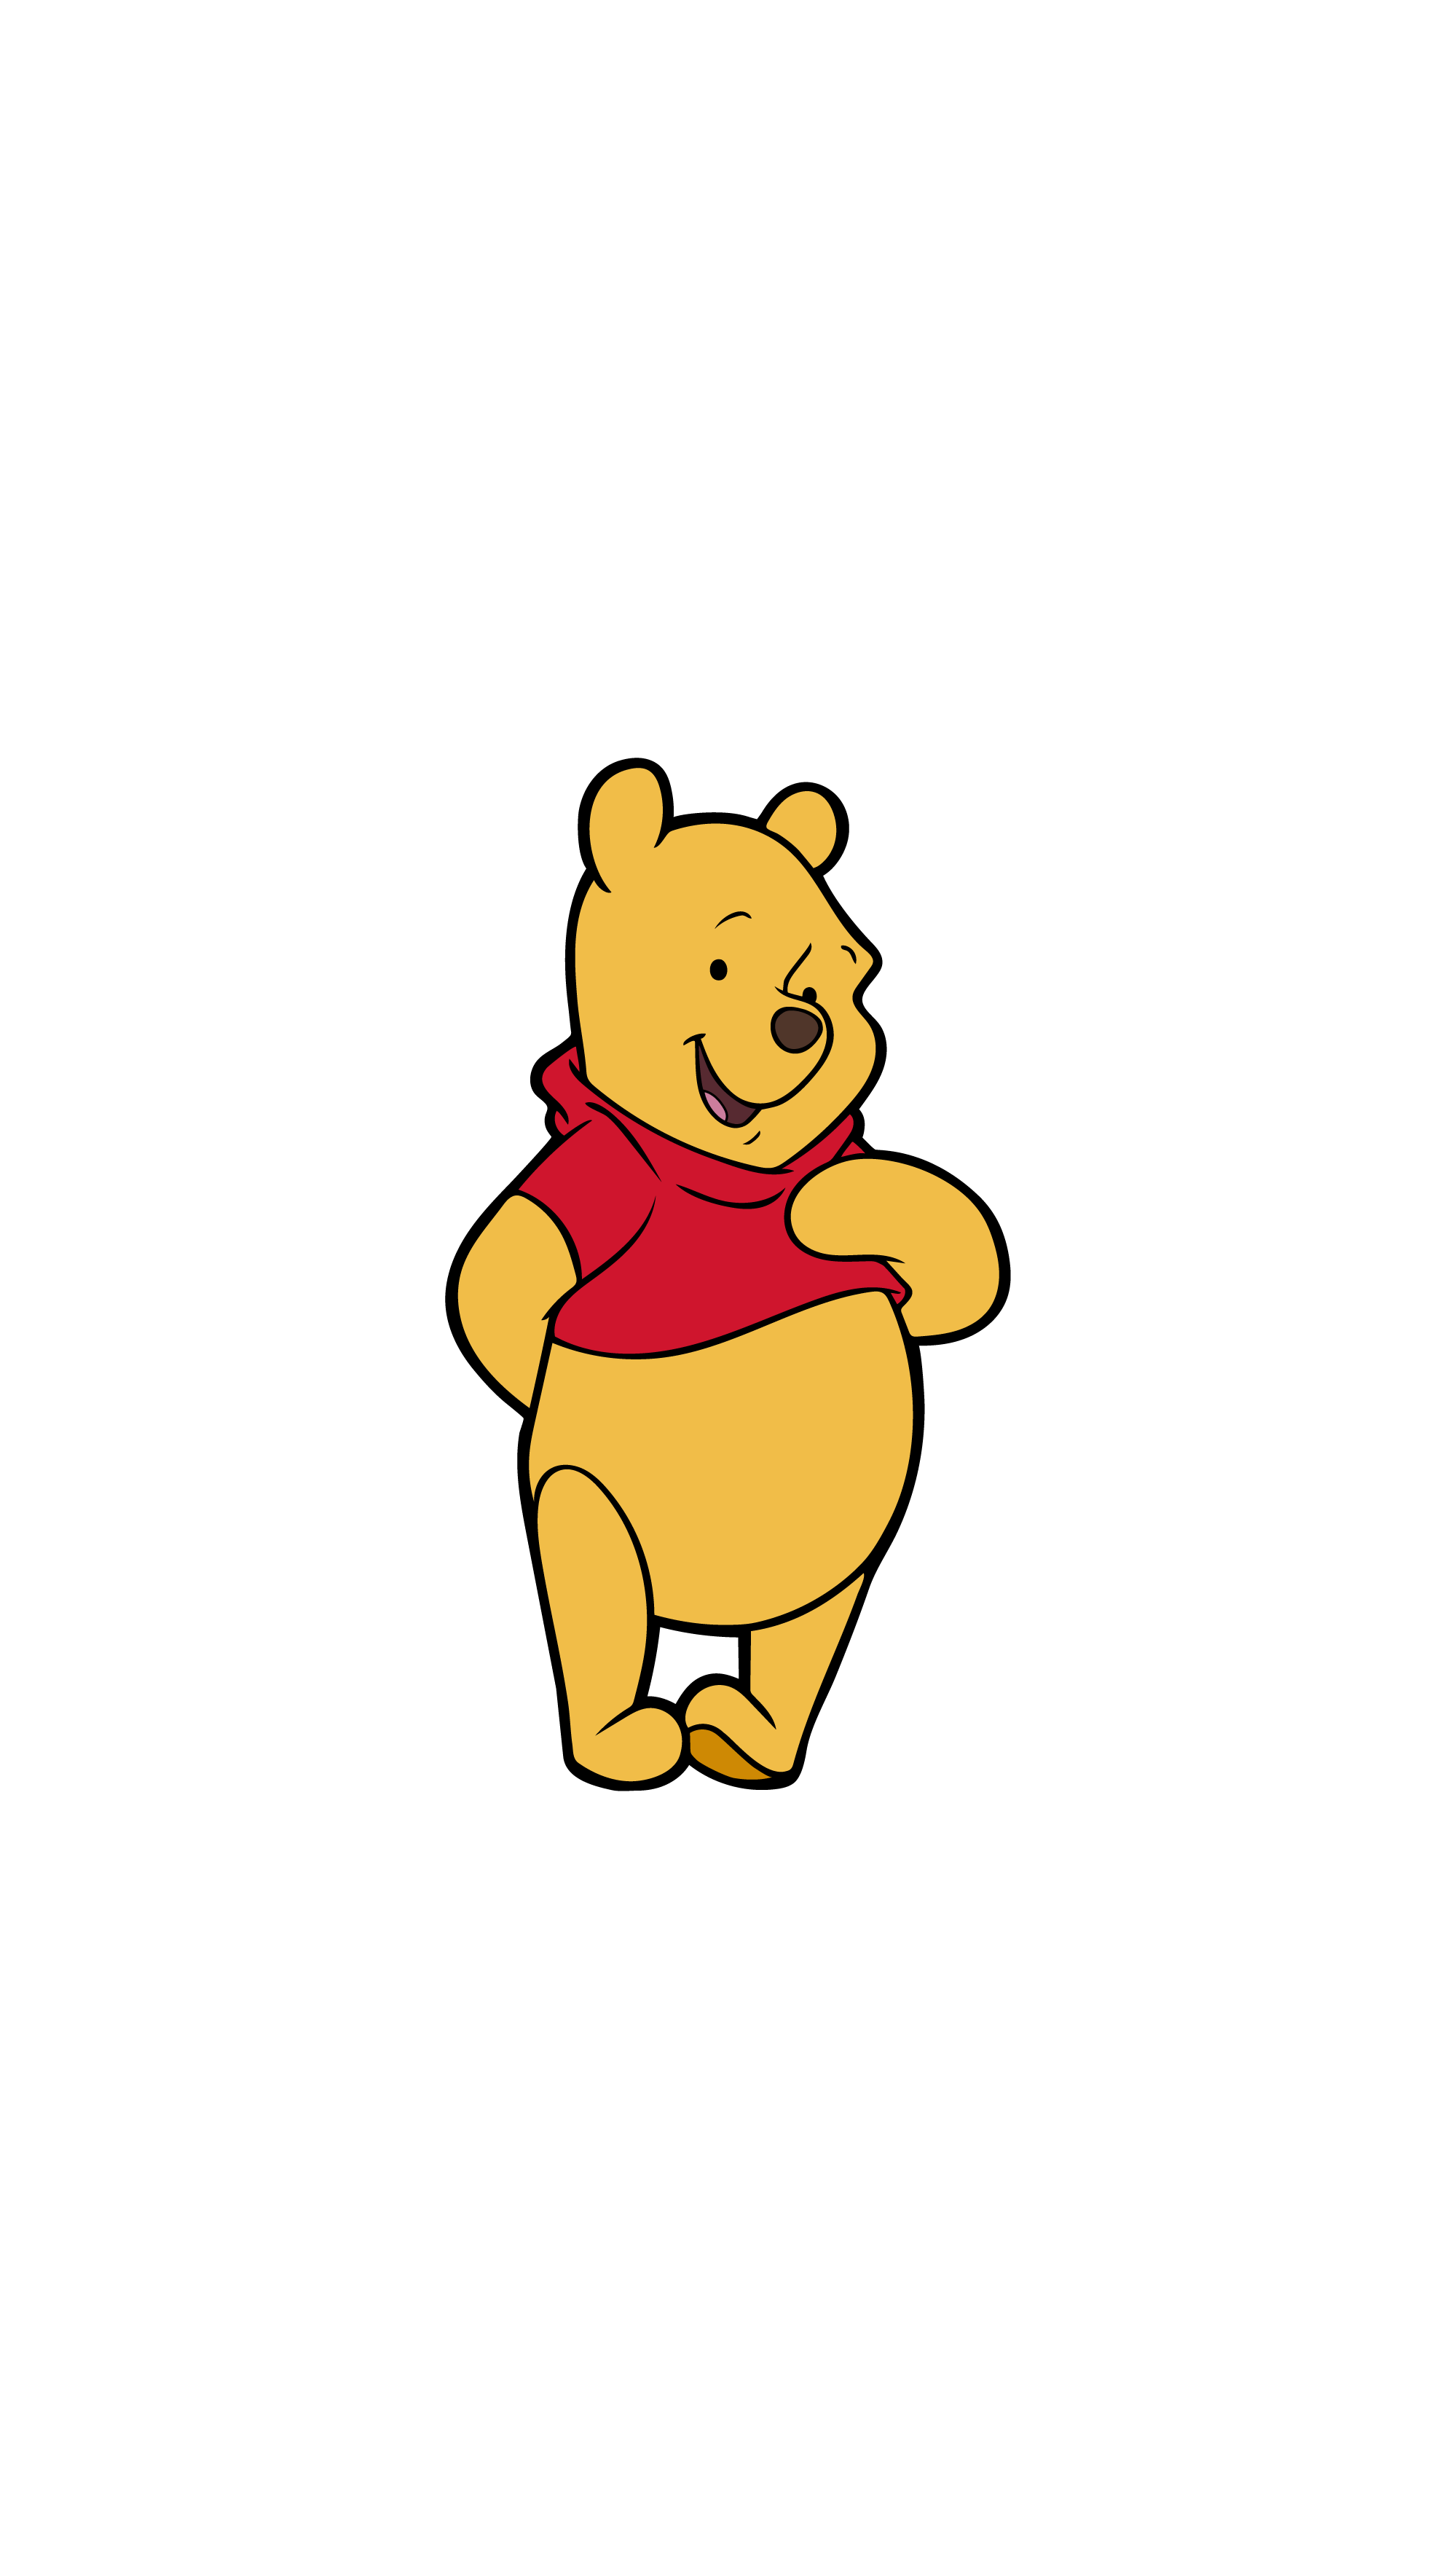 Winnie the Pooh (M81)